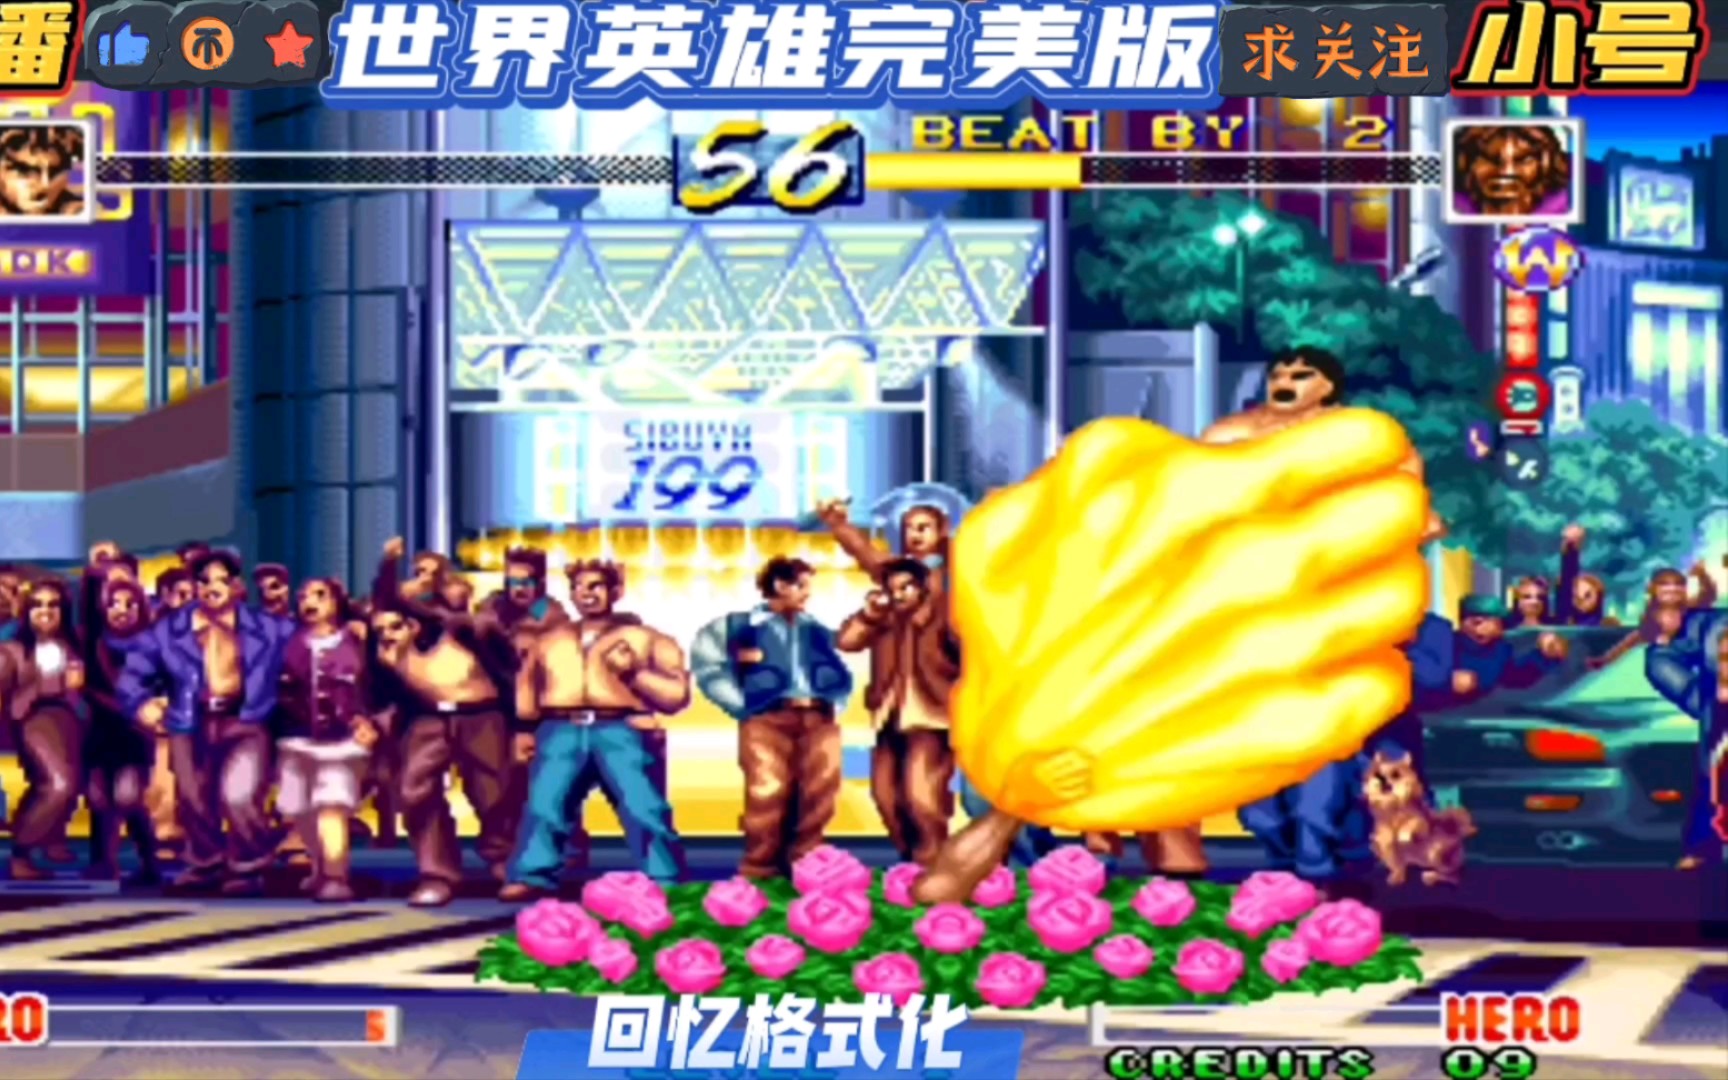 怀旧经典街机格斗游戏 世界英雄完美版 幸福TVB的良子使出武林绝学掏裆手。。。_哔哩哔哩 (゜-゜)つロ 干杯~-bilibili